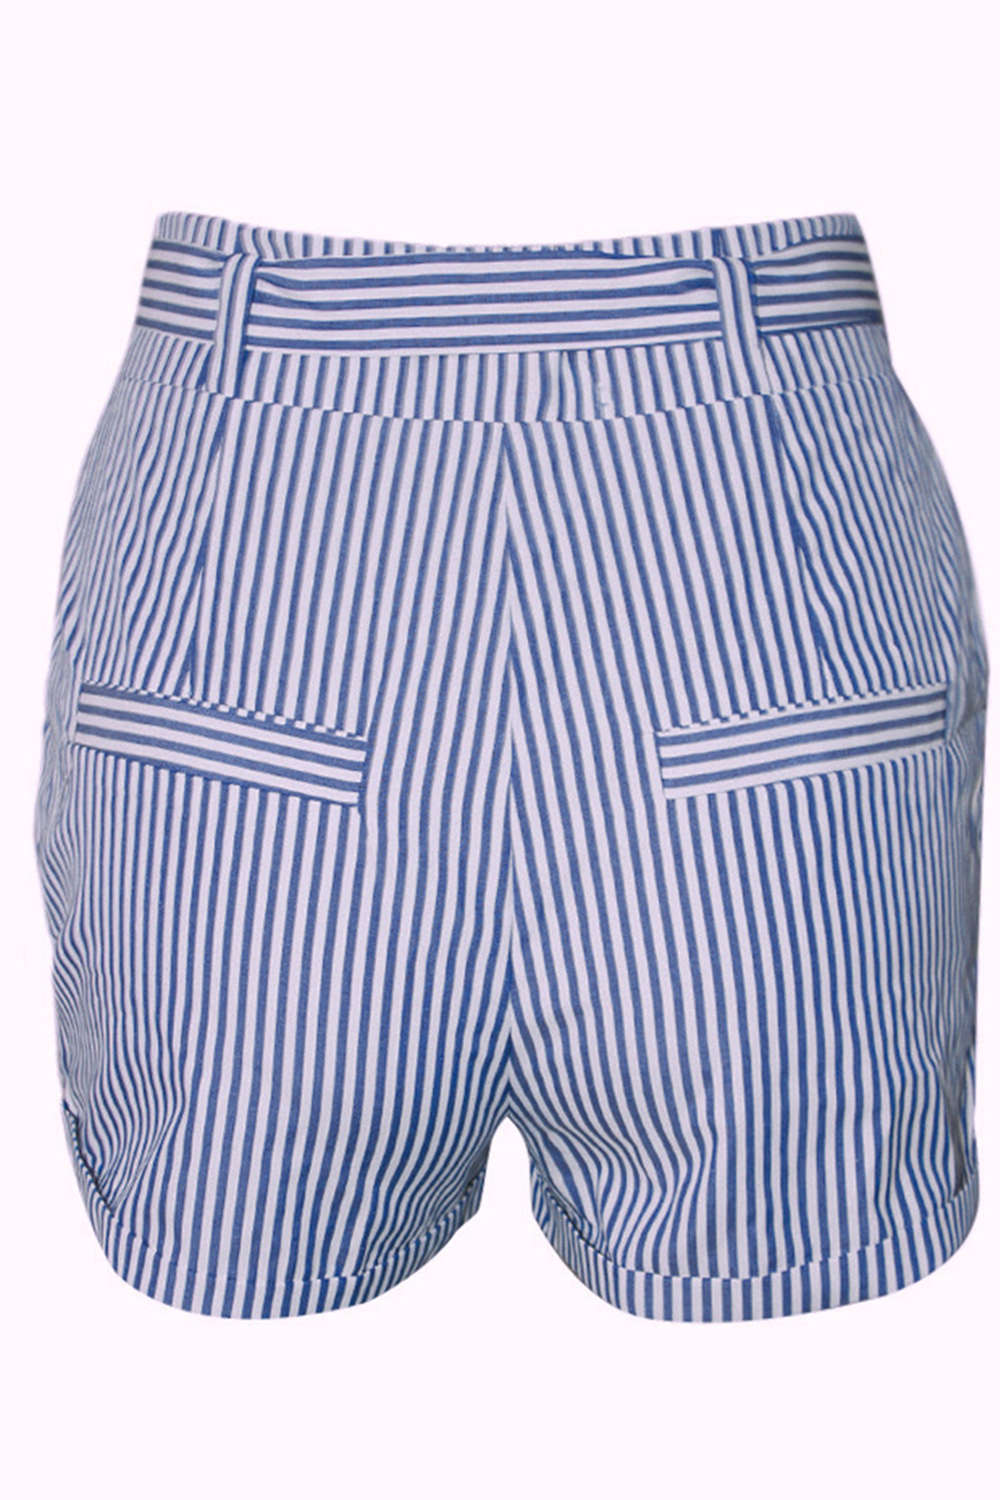 Iyasson Women's High Waist Stripe Casual Bow Shorts